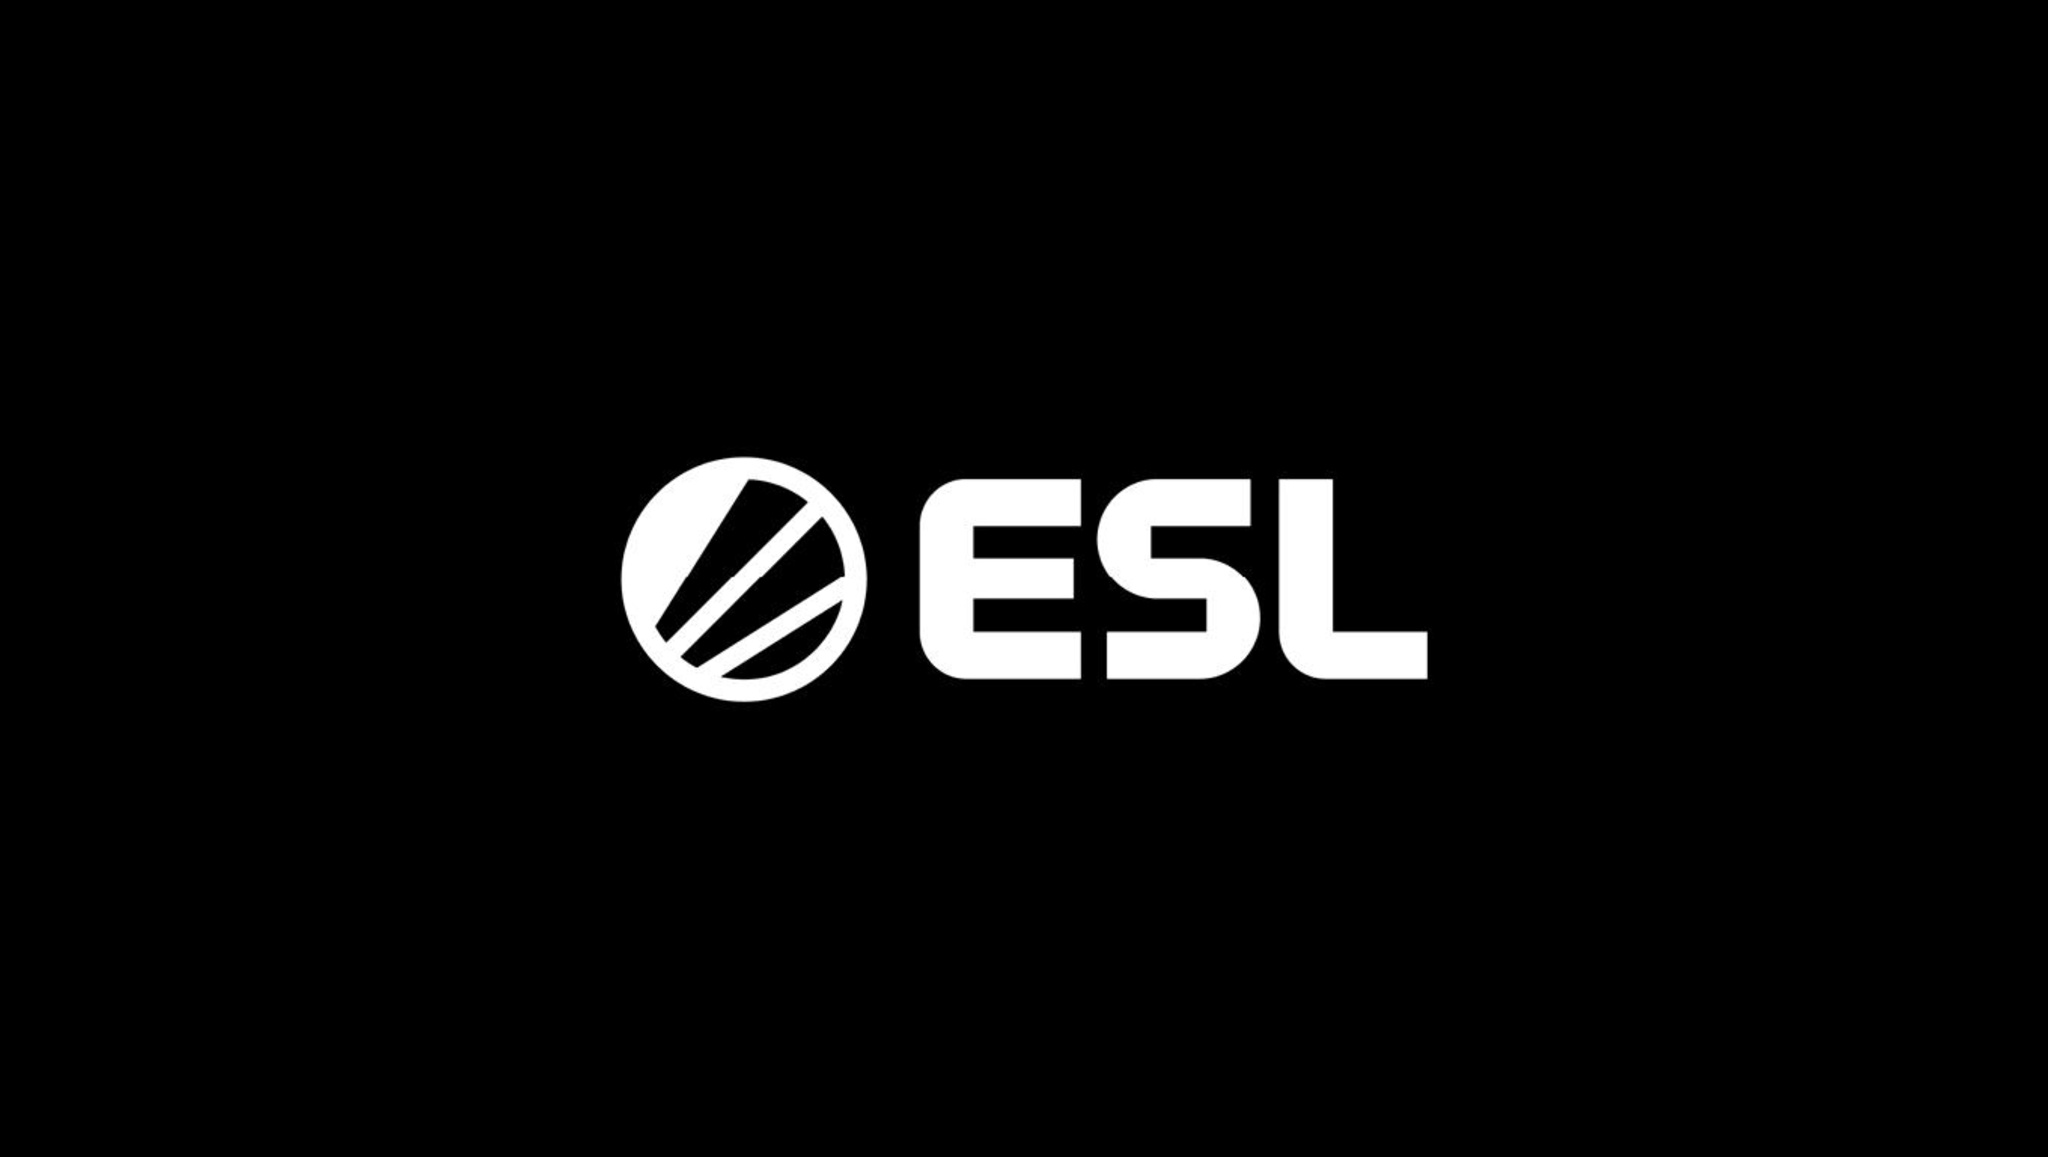 ESL: мы продолжим проводить турниры по CS:GO, пока переход не станет более оптимальным решением